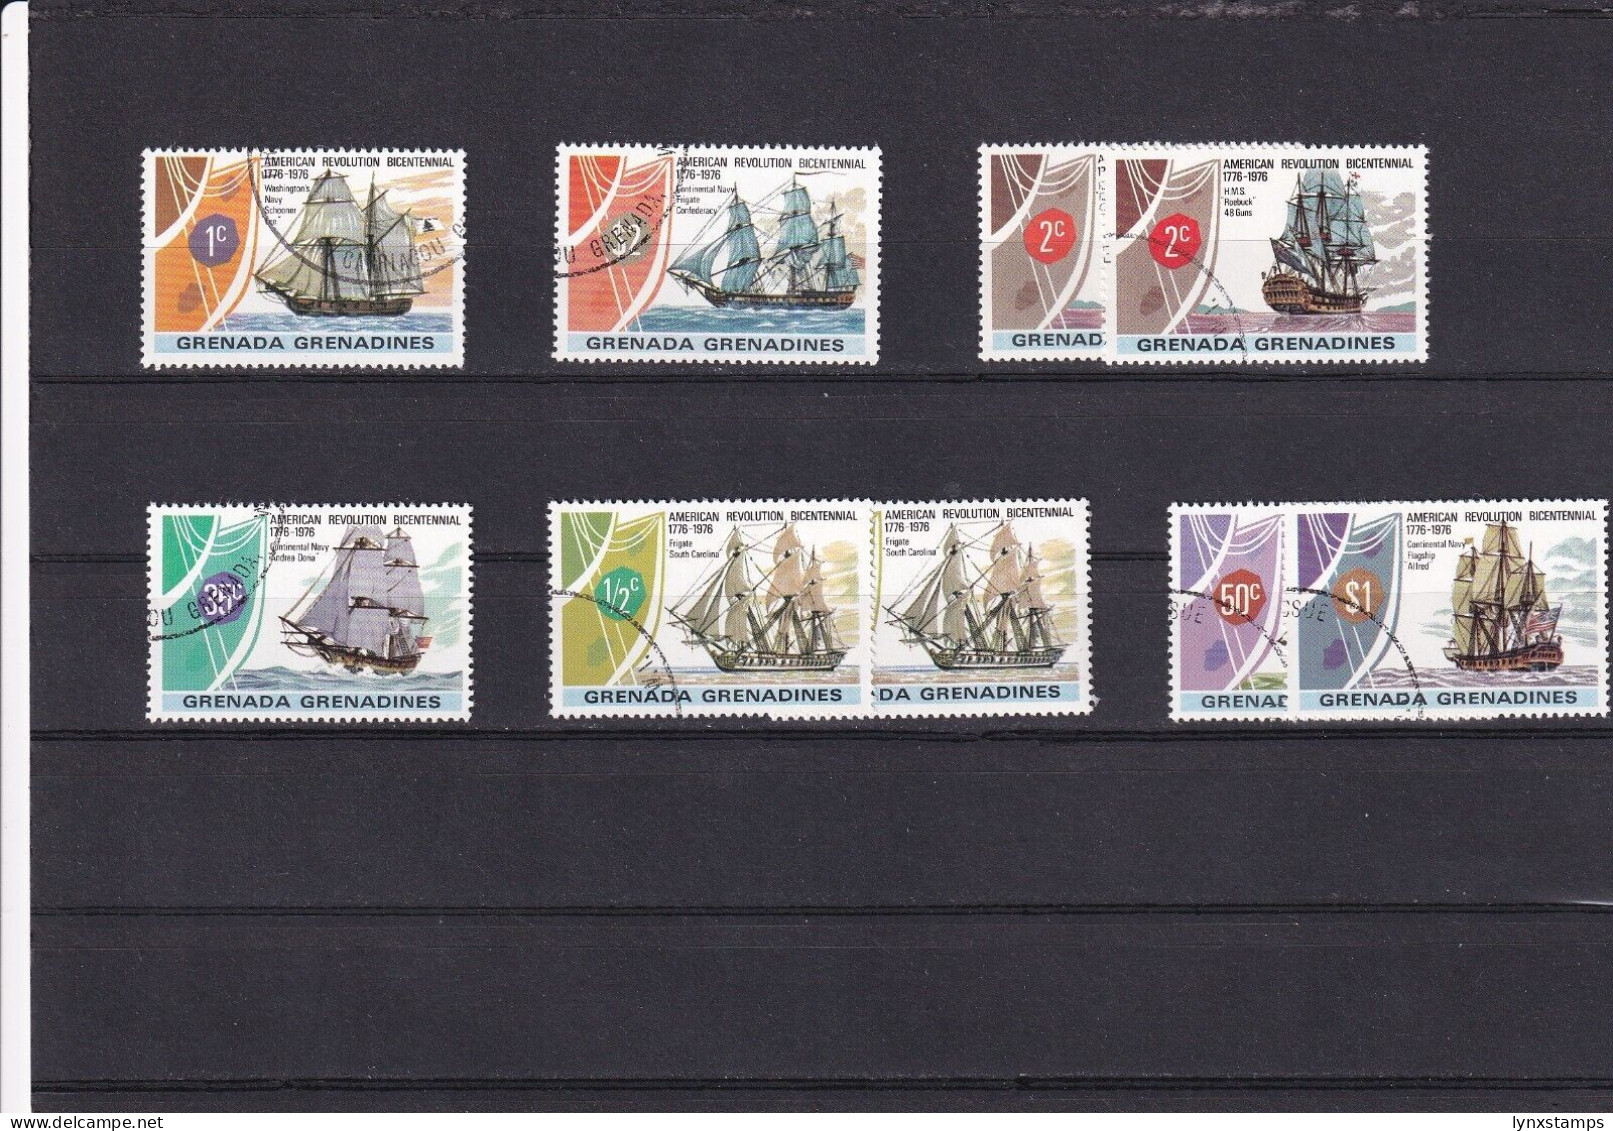 SA06a Grenada Grenadines 1976 200th Anniv American Revolution-Sails FDI Stamps - Grenada (1974-...)